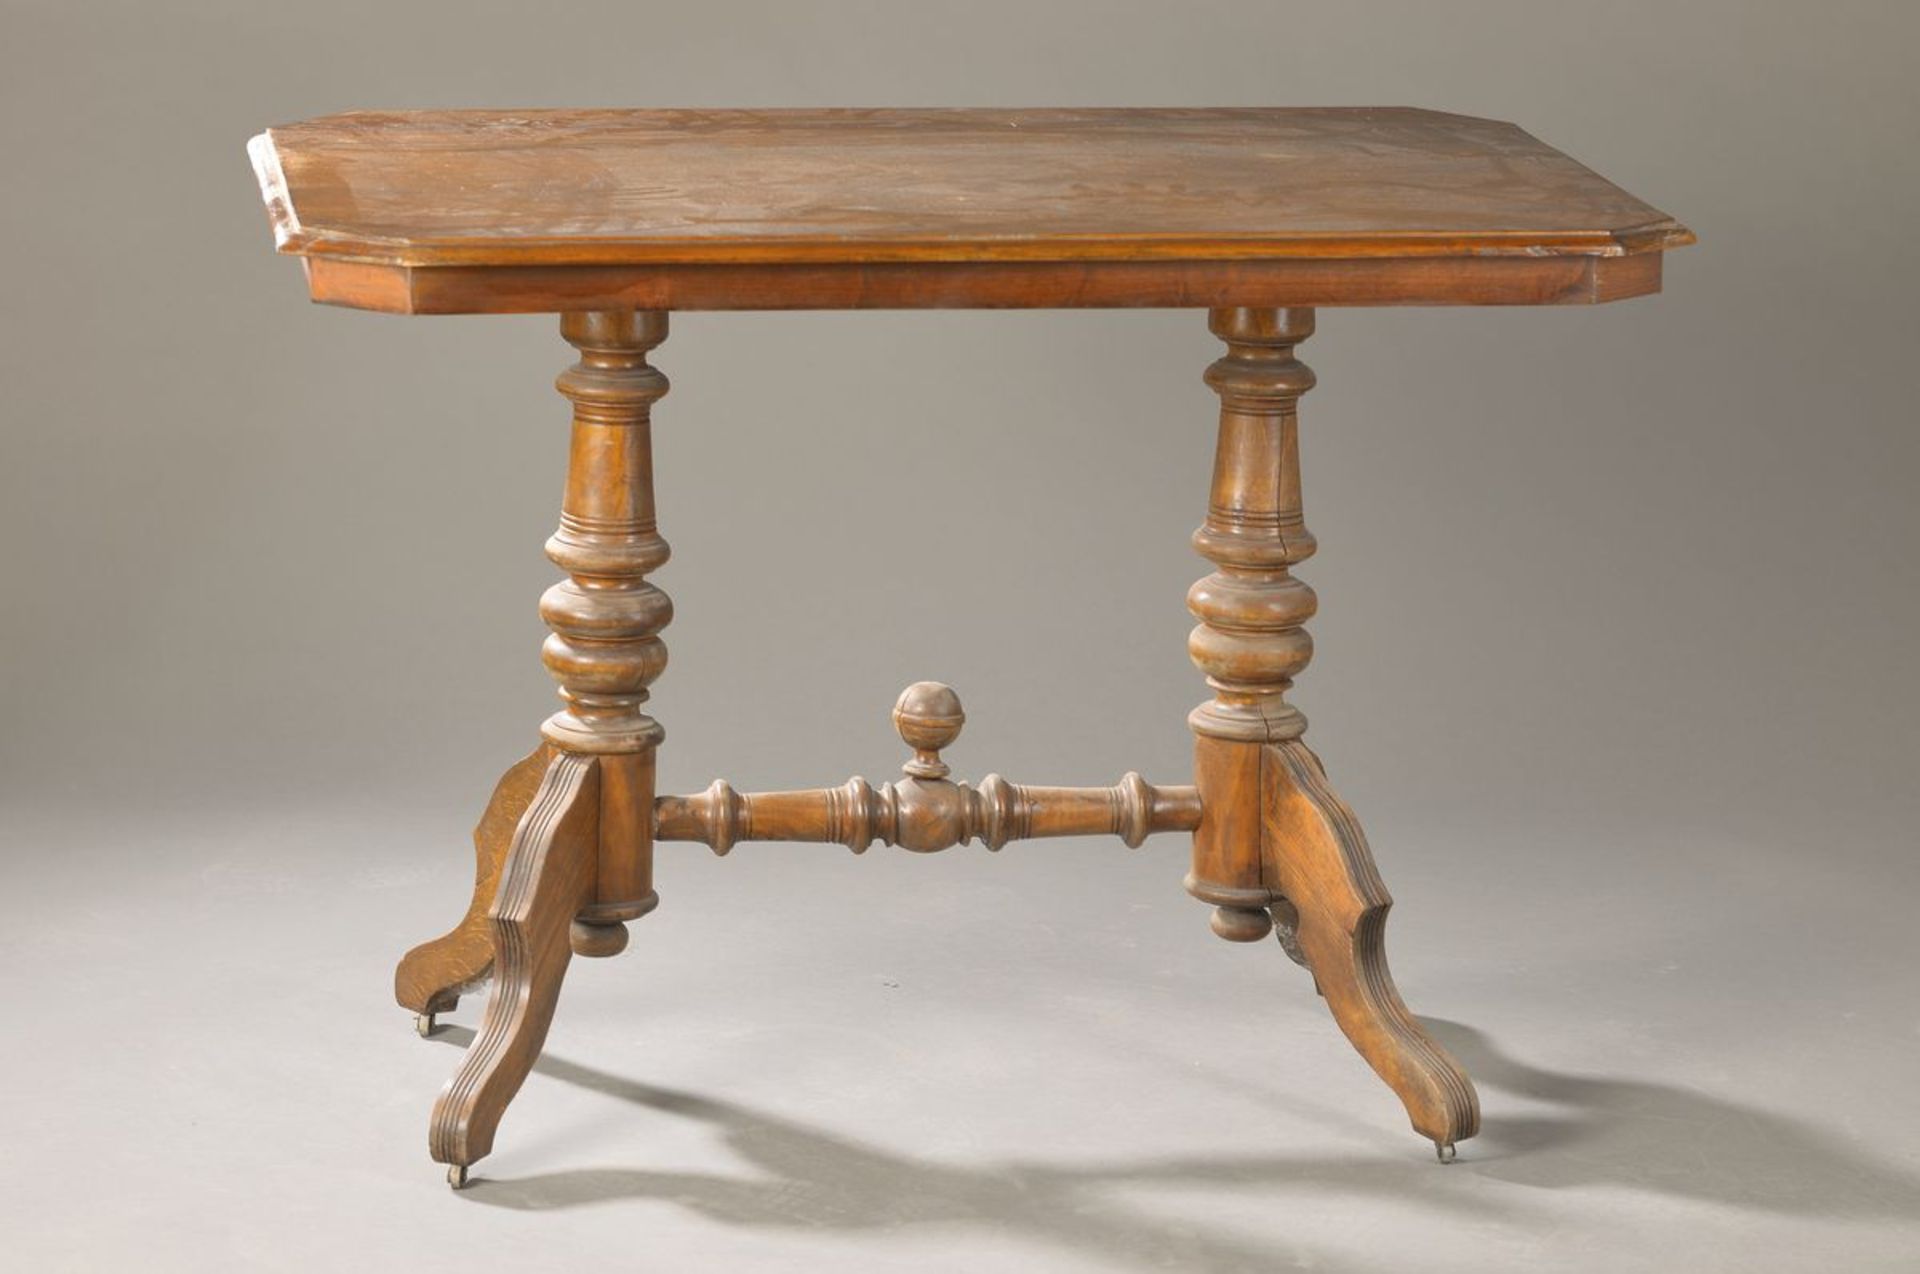 Tisch, deutsch um 1870/80, Nussbaum massiv, Nussbaumfurnier, 4 Auslegefüsse, ca. 111x68x80